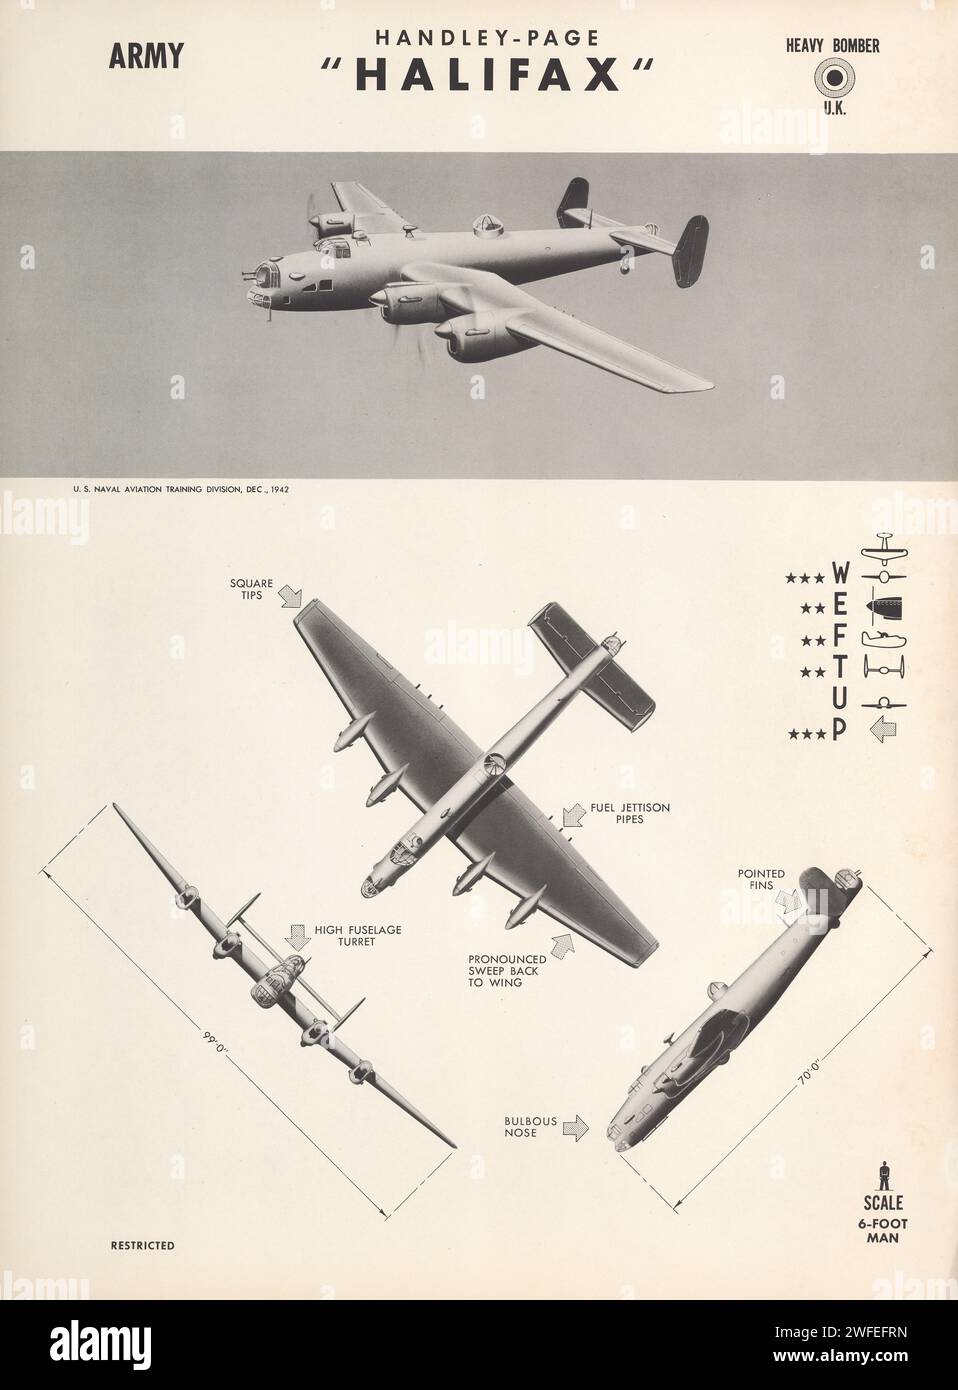 1942 Handley-Page Halifax Heavy Bomber RAF poster di identificazione degli aerei WW2. Il bombardiere Halifax era un bombardiere bimotore entrato in servizio con la RAF nel 1940. Foto Stock